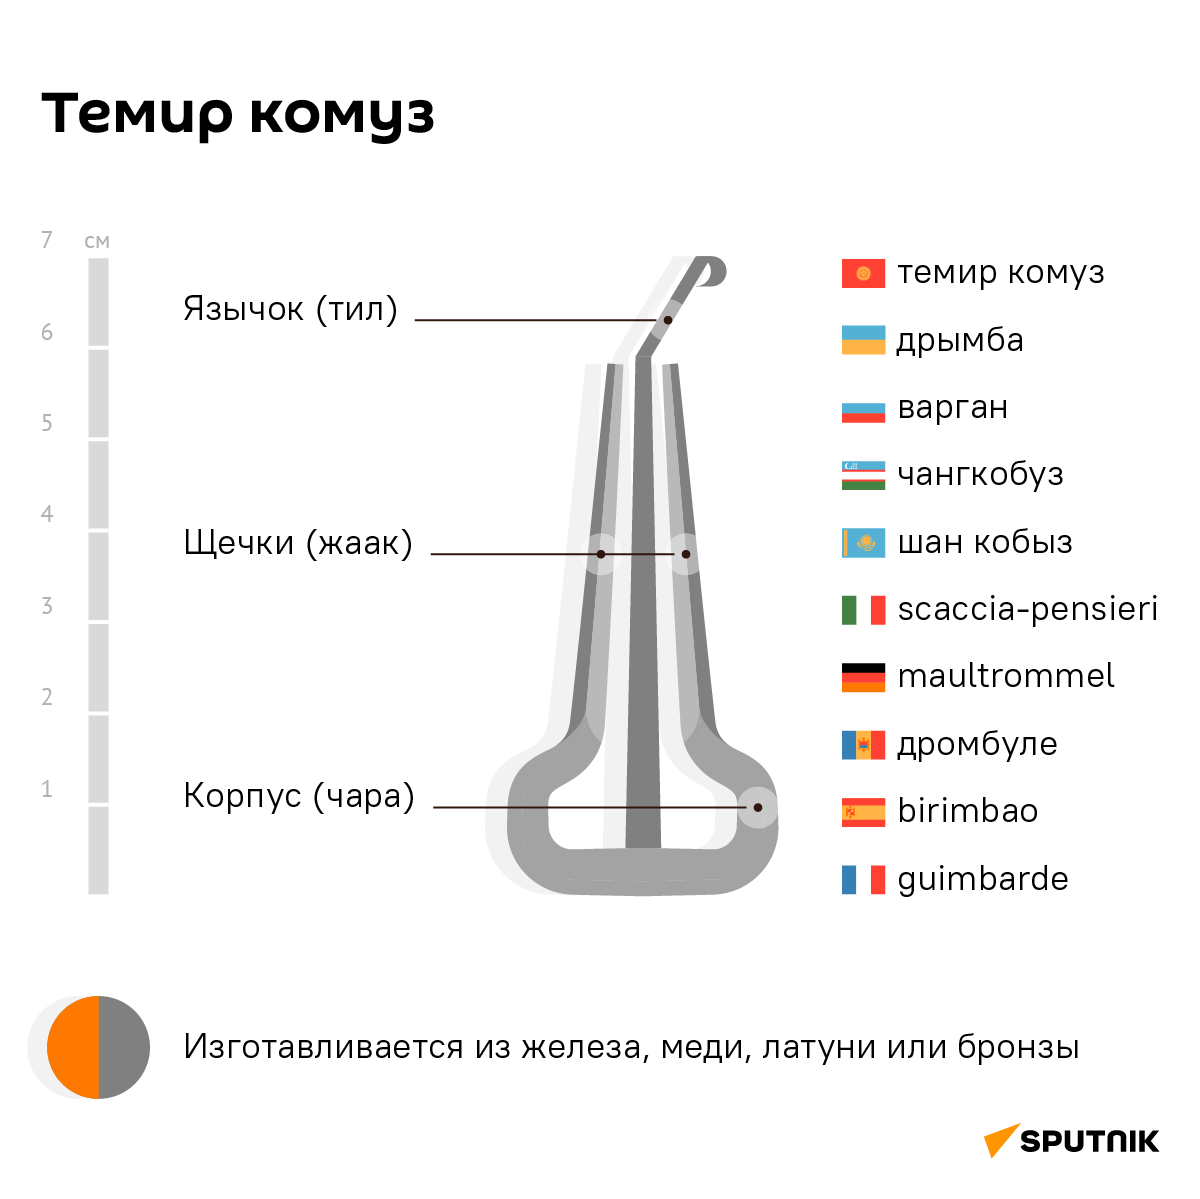 Темир комуз — один из древнейших кыргызских щипковых язычковых инструментов, вид варгана.  - Sputnik Кыргызстан